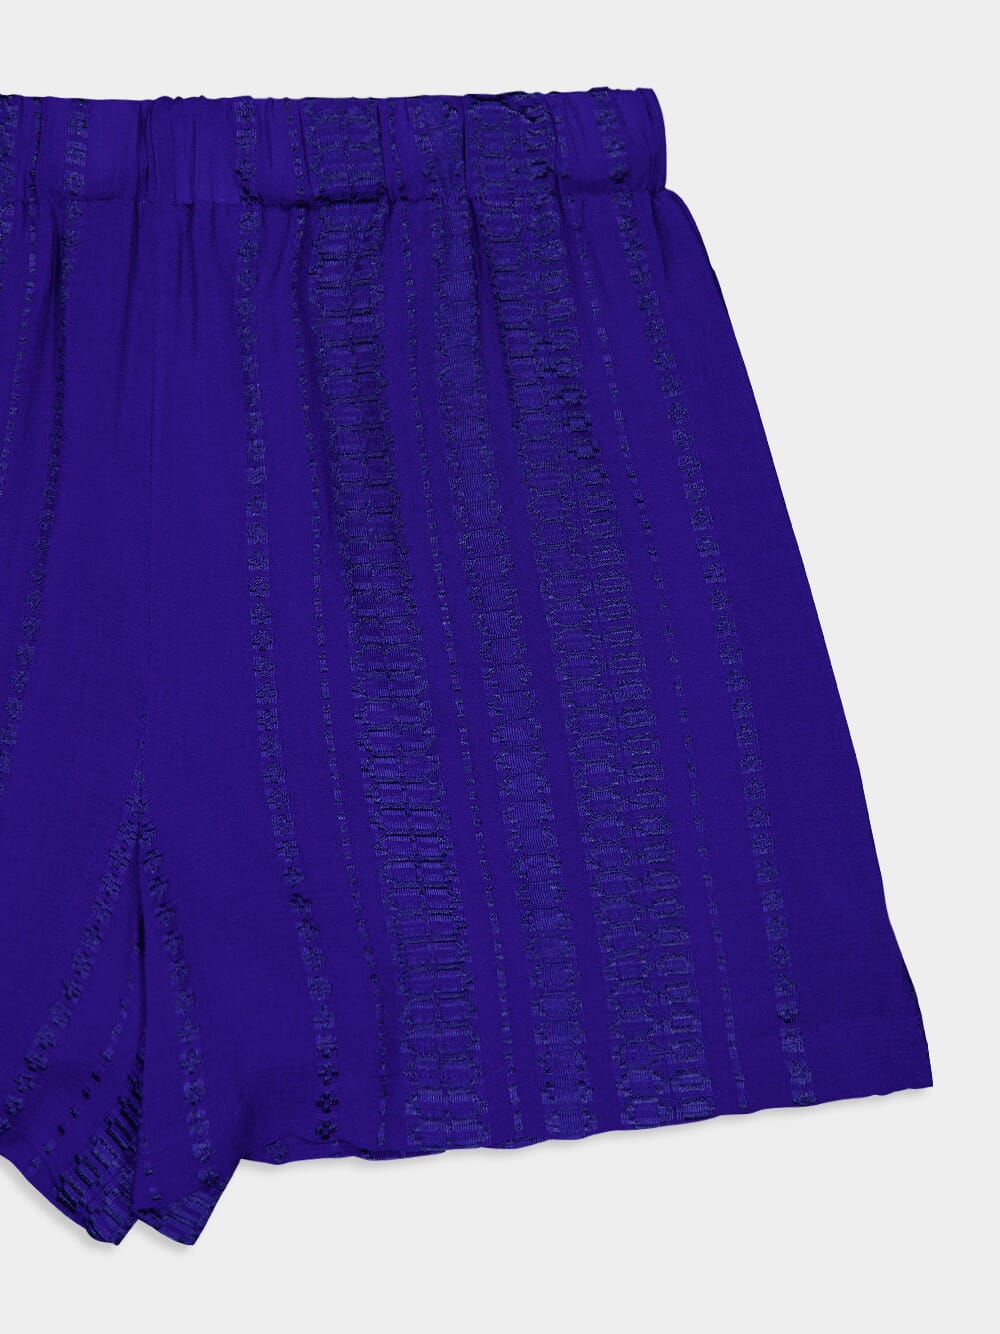 Paxi Textured Cobalt Shorts